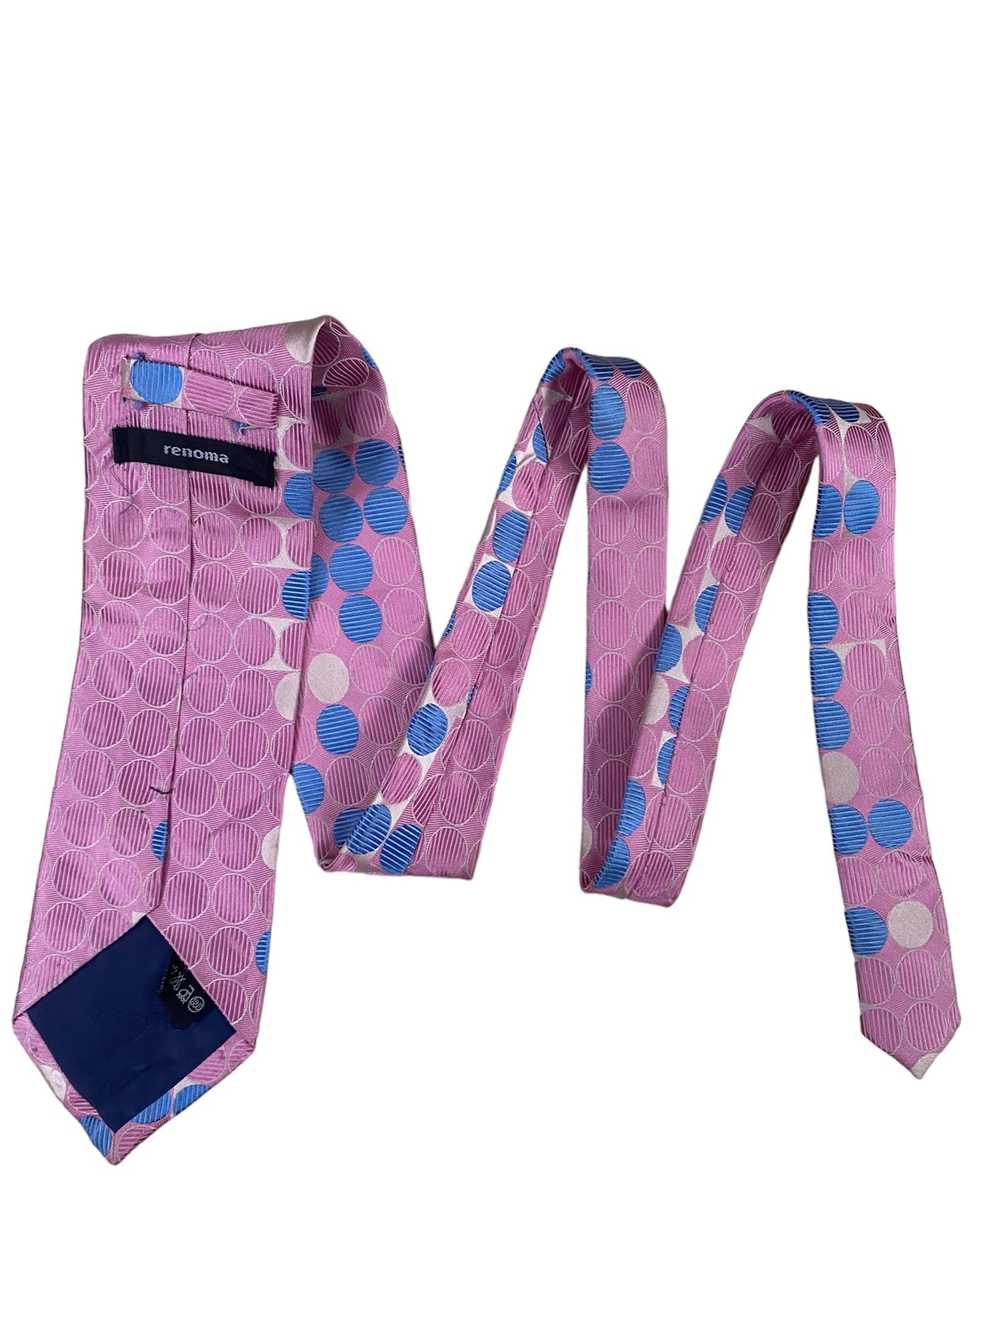 Brand × Renoma RENOMA Paris pink tie silk - image 2